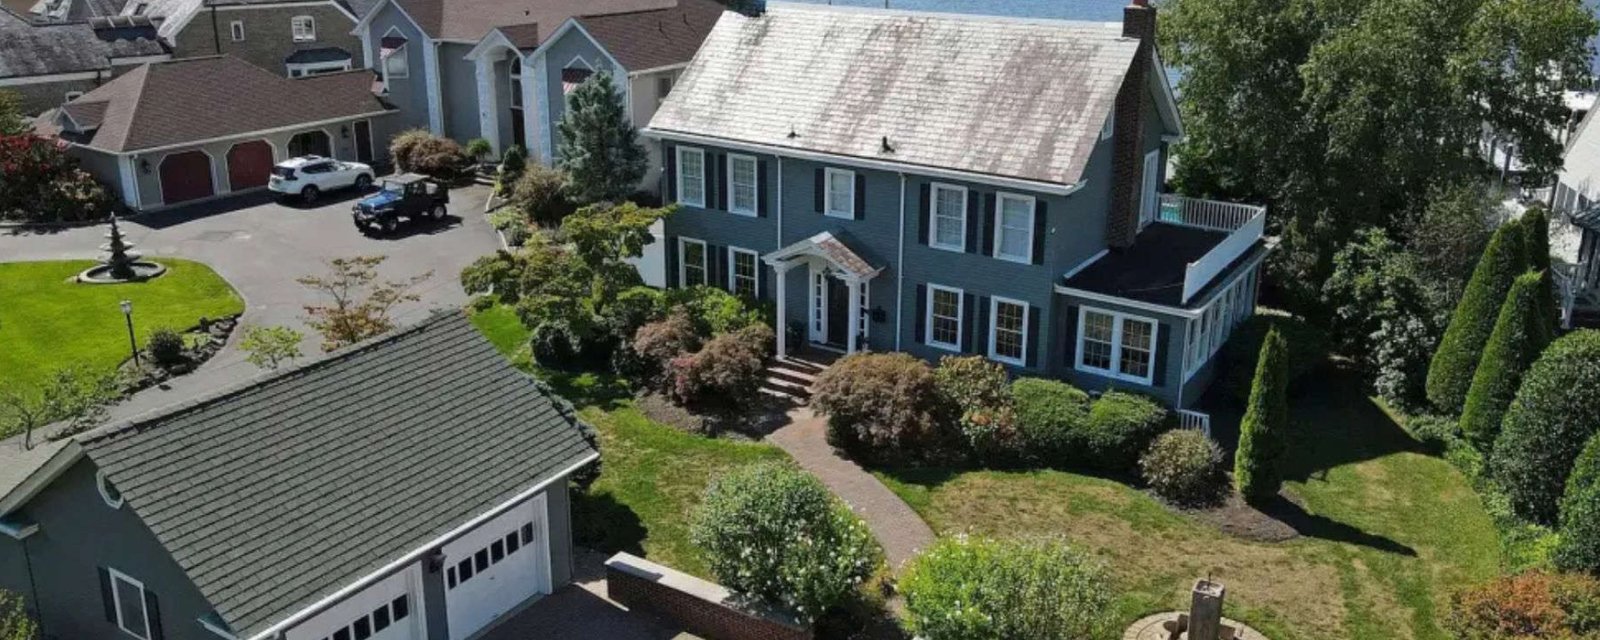 L’emblématique maison utilisée dans le film Amityville a été vendue pour 1,46 million de dollars.